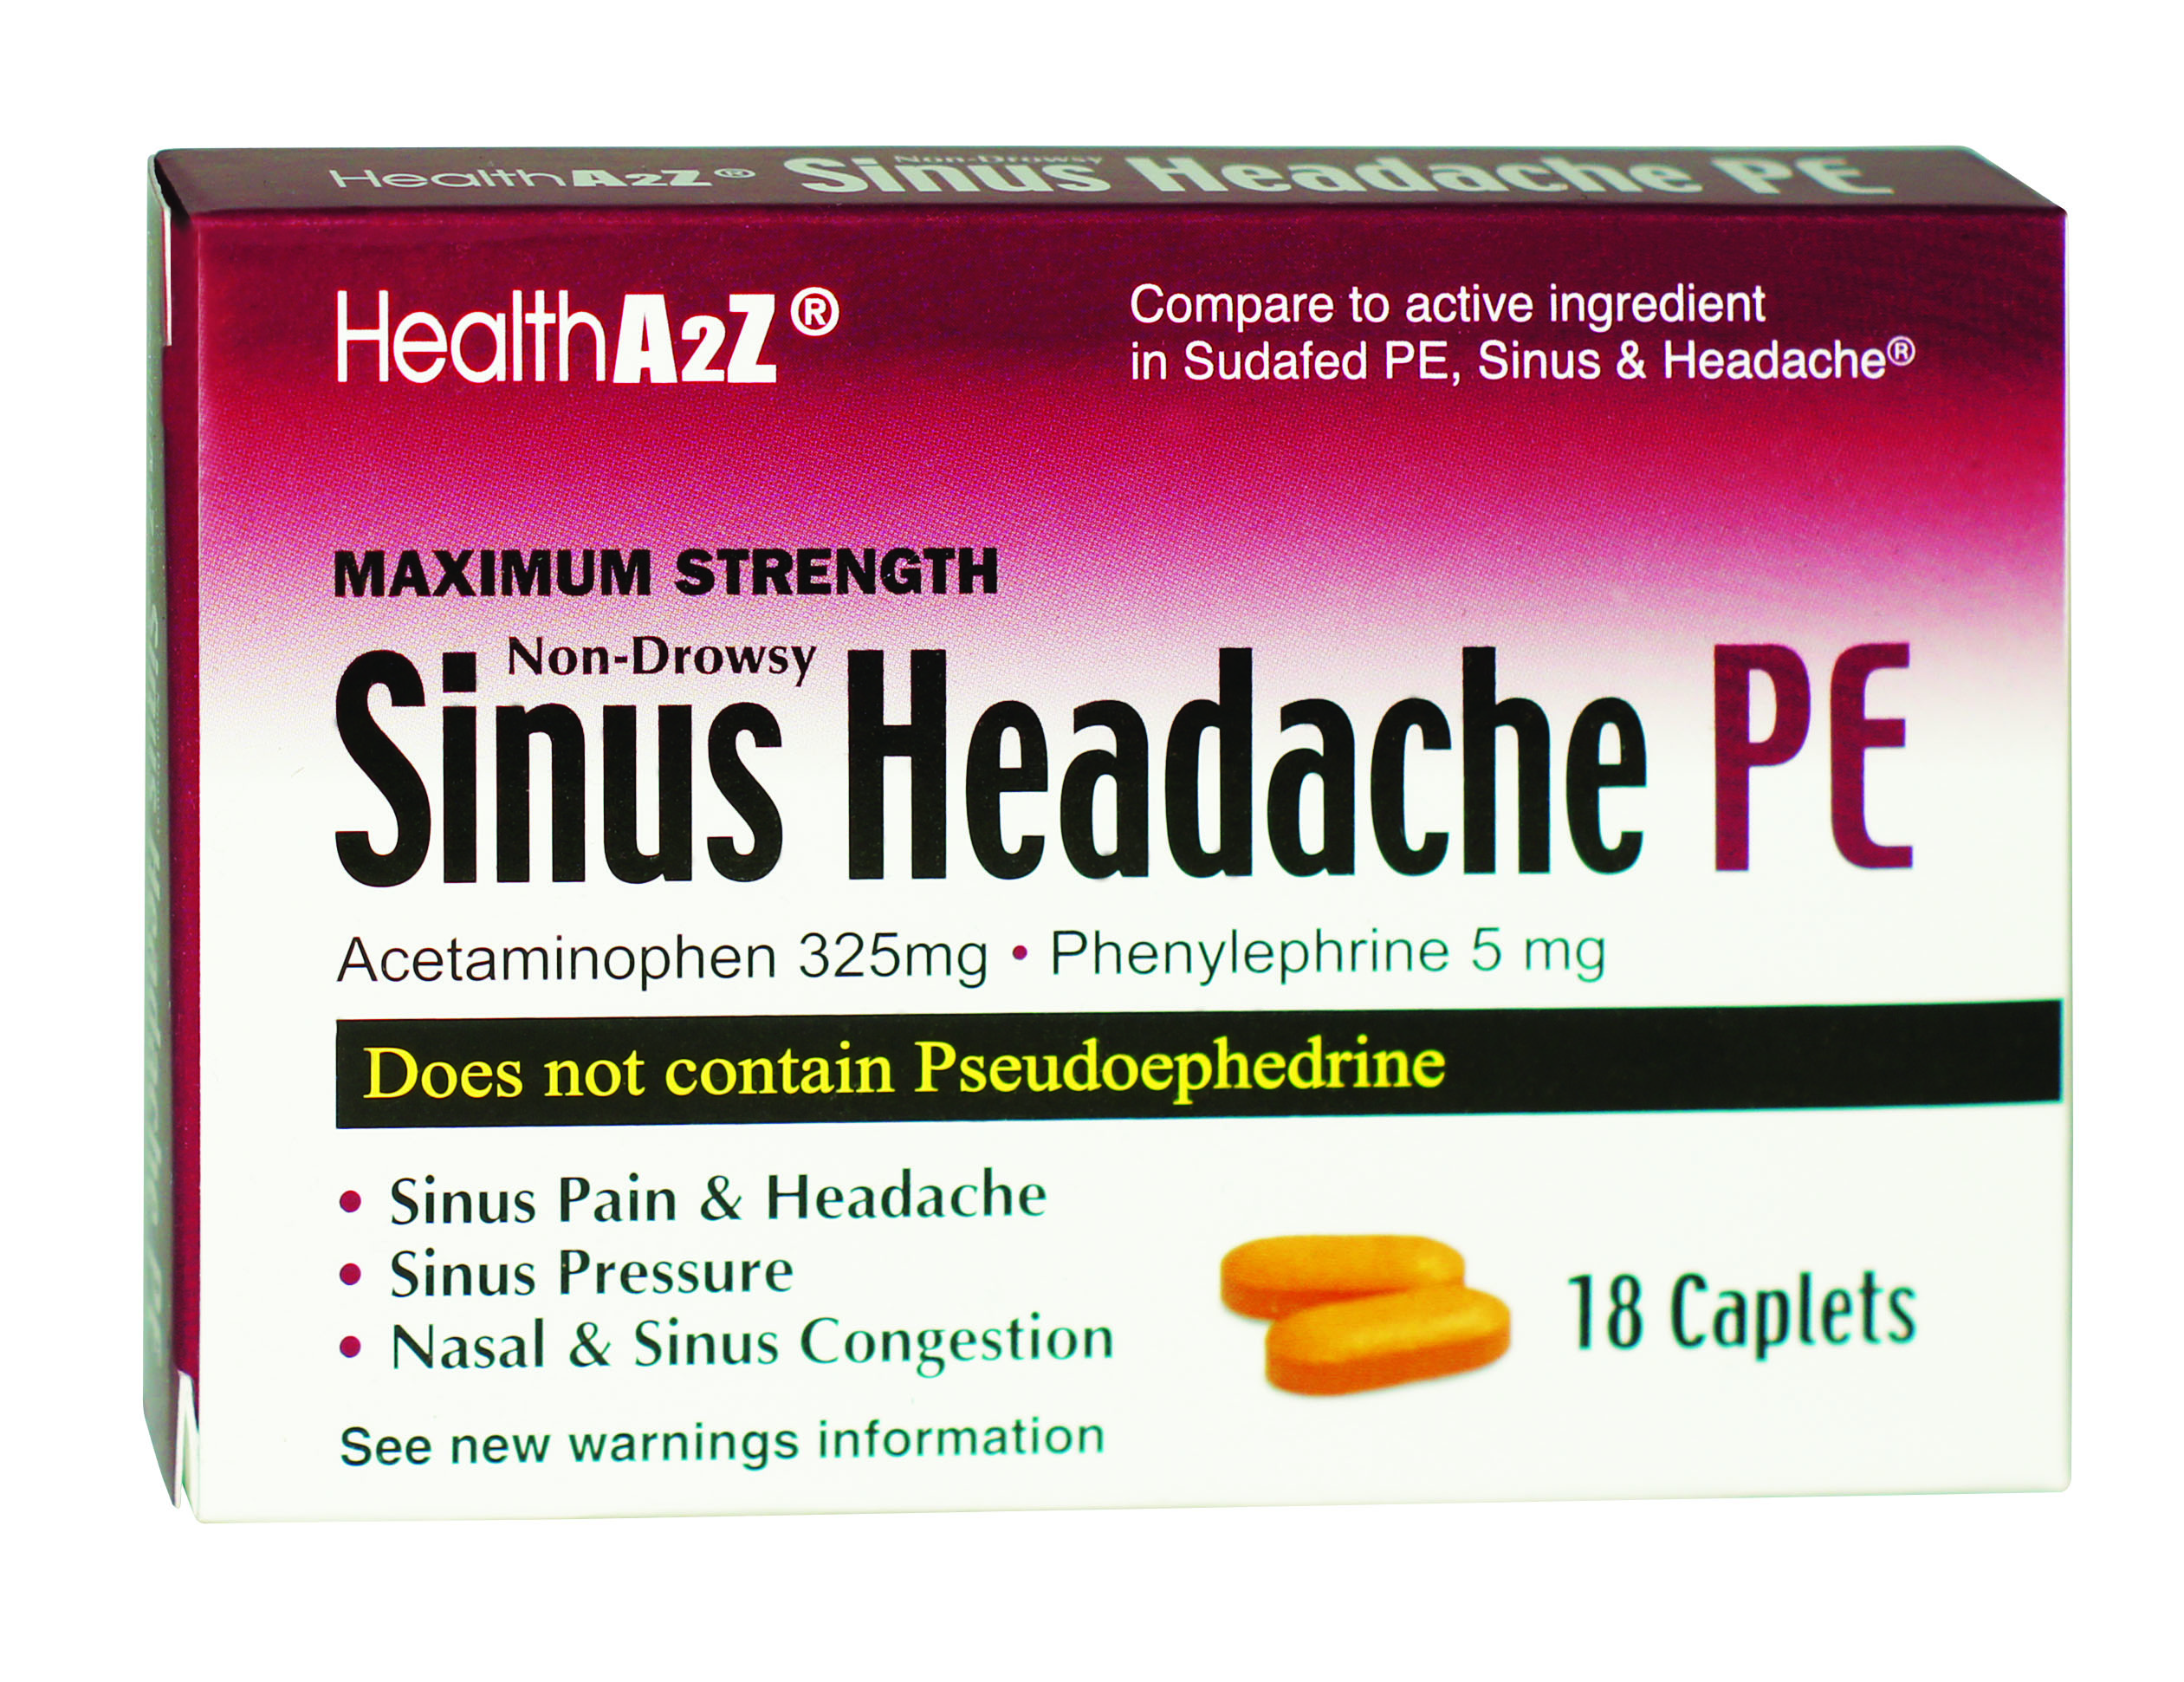 HealthA2Z® Sinus Headache PE